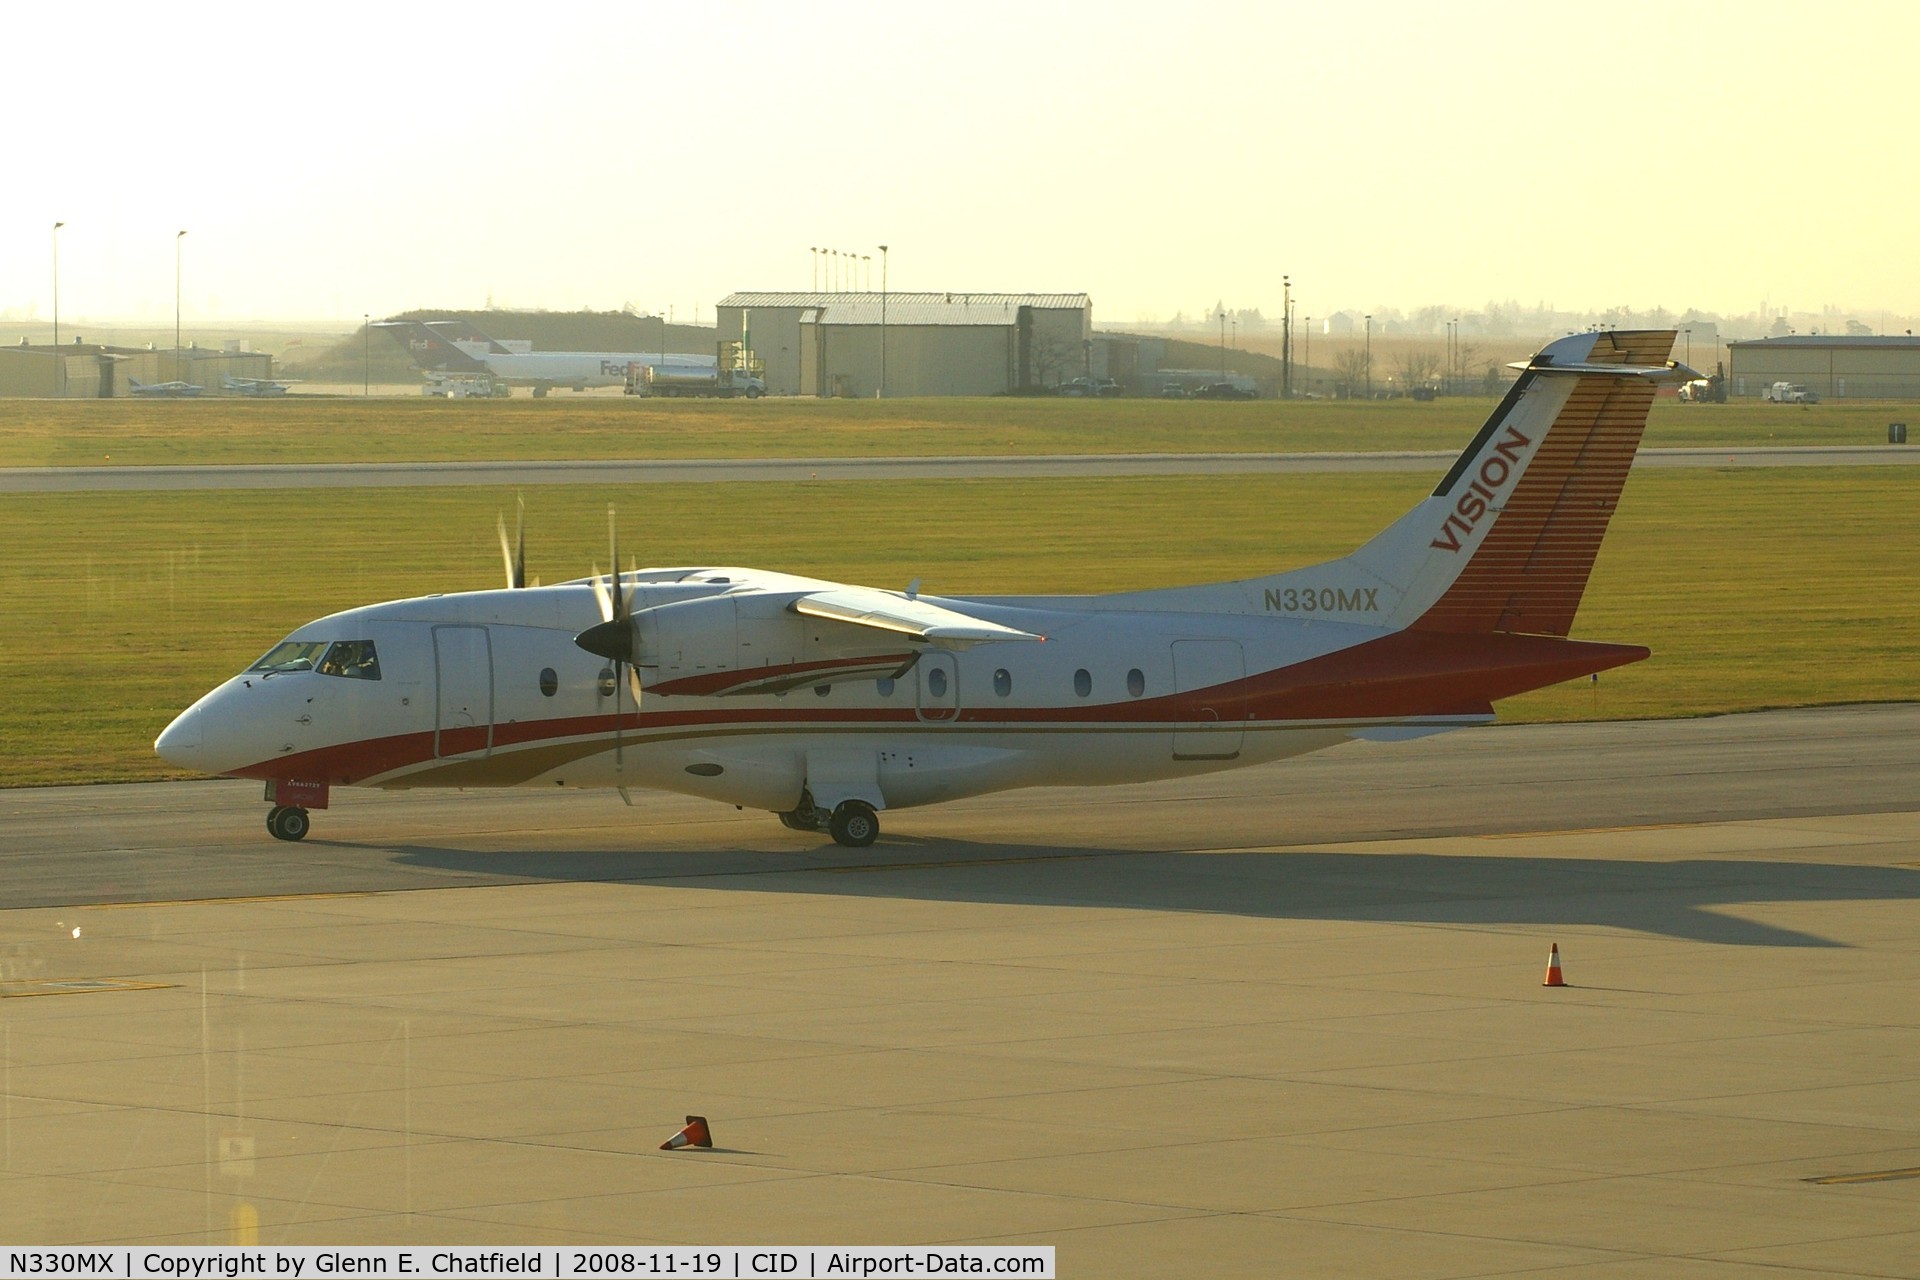 N330MX, 1996 Dornier 328-100 C/N 3067, Taxiing to Runway 31 for departure.